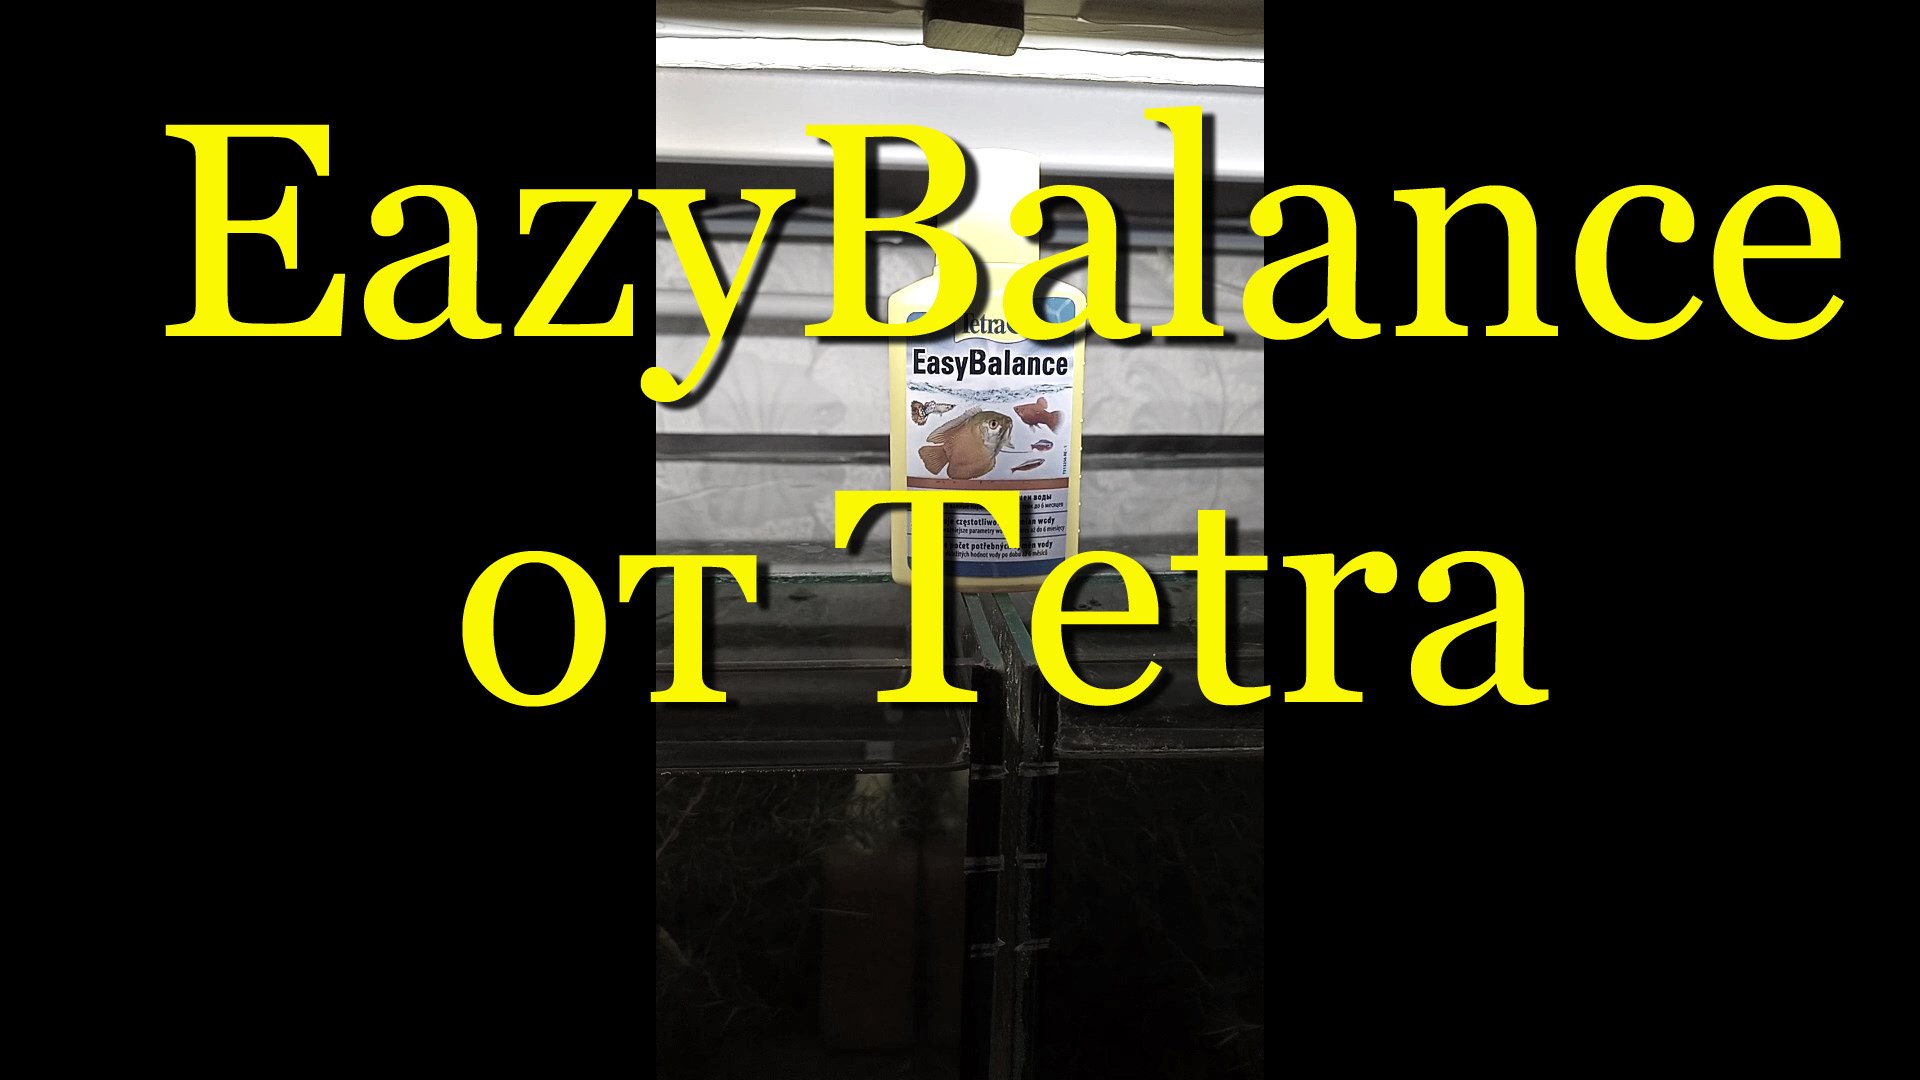 #EazyBalance от Tetra - результат использования